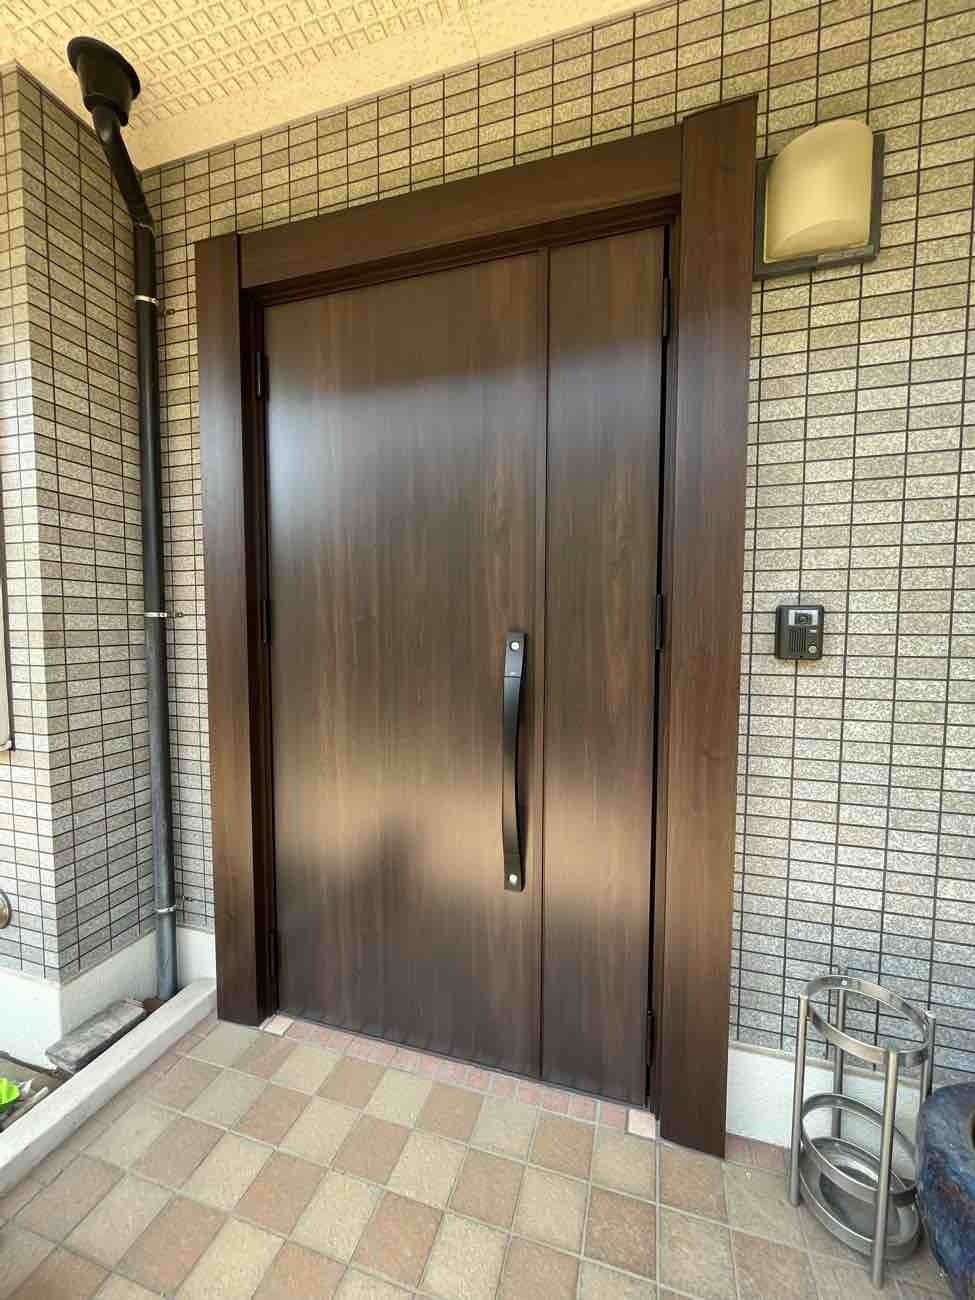 【東京都足立区】F様邸玄関ドア交換工事が完了しました。リクシル リシェント 画像